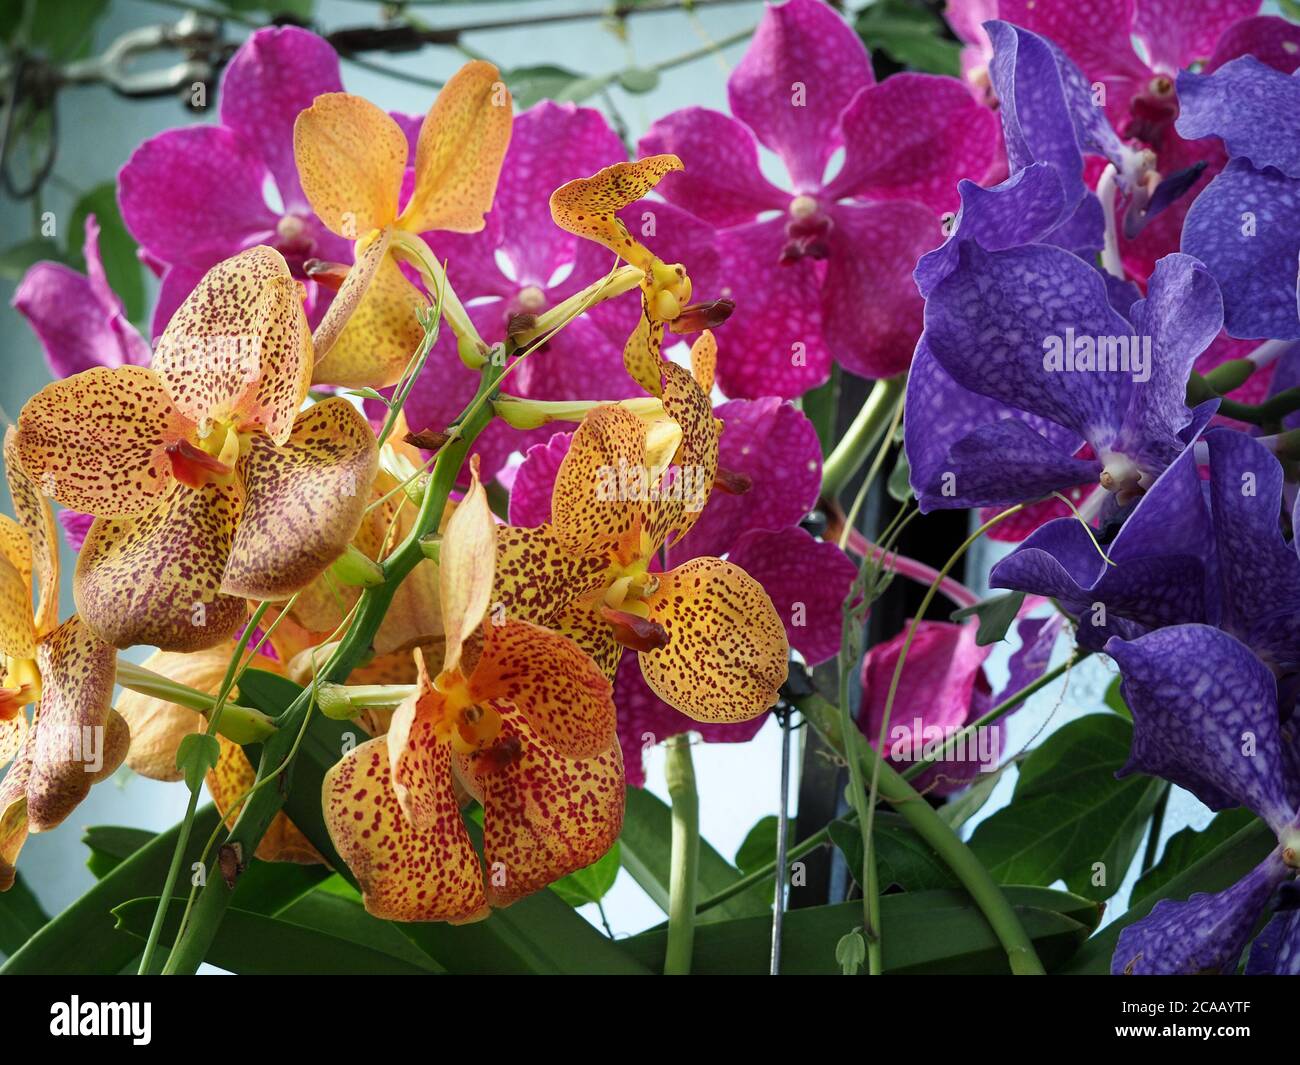 fleurs exotiques d'orchidées mélangées avec pétales et sépales dorés, bleus et violets sur des tiges vertes pour un affichage pastel éclatant Banque D'Images